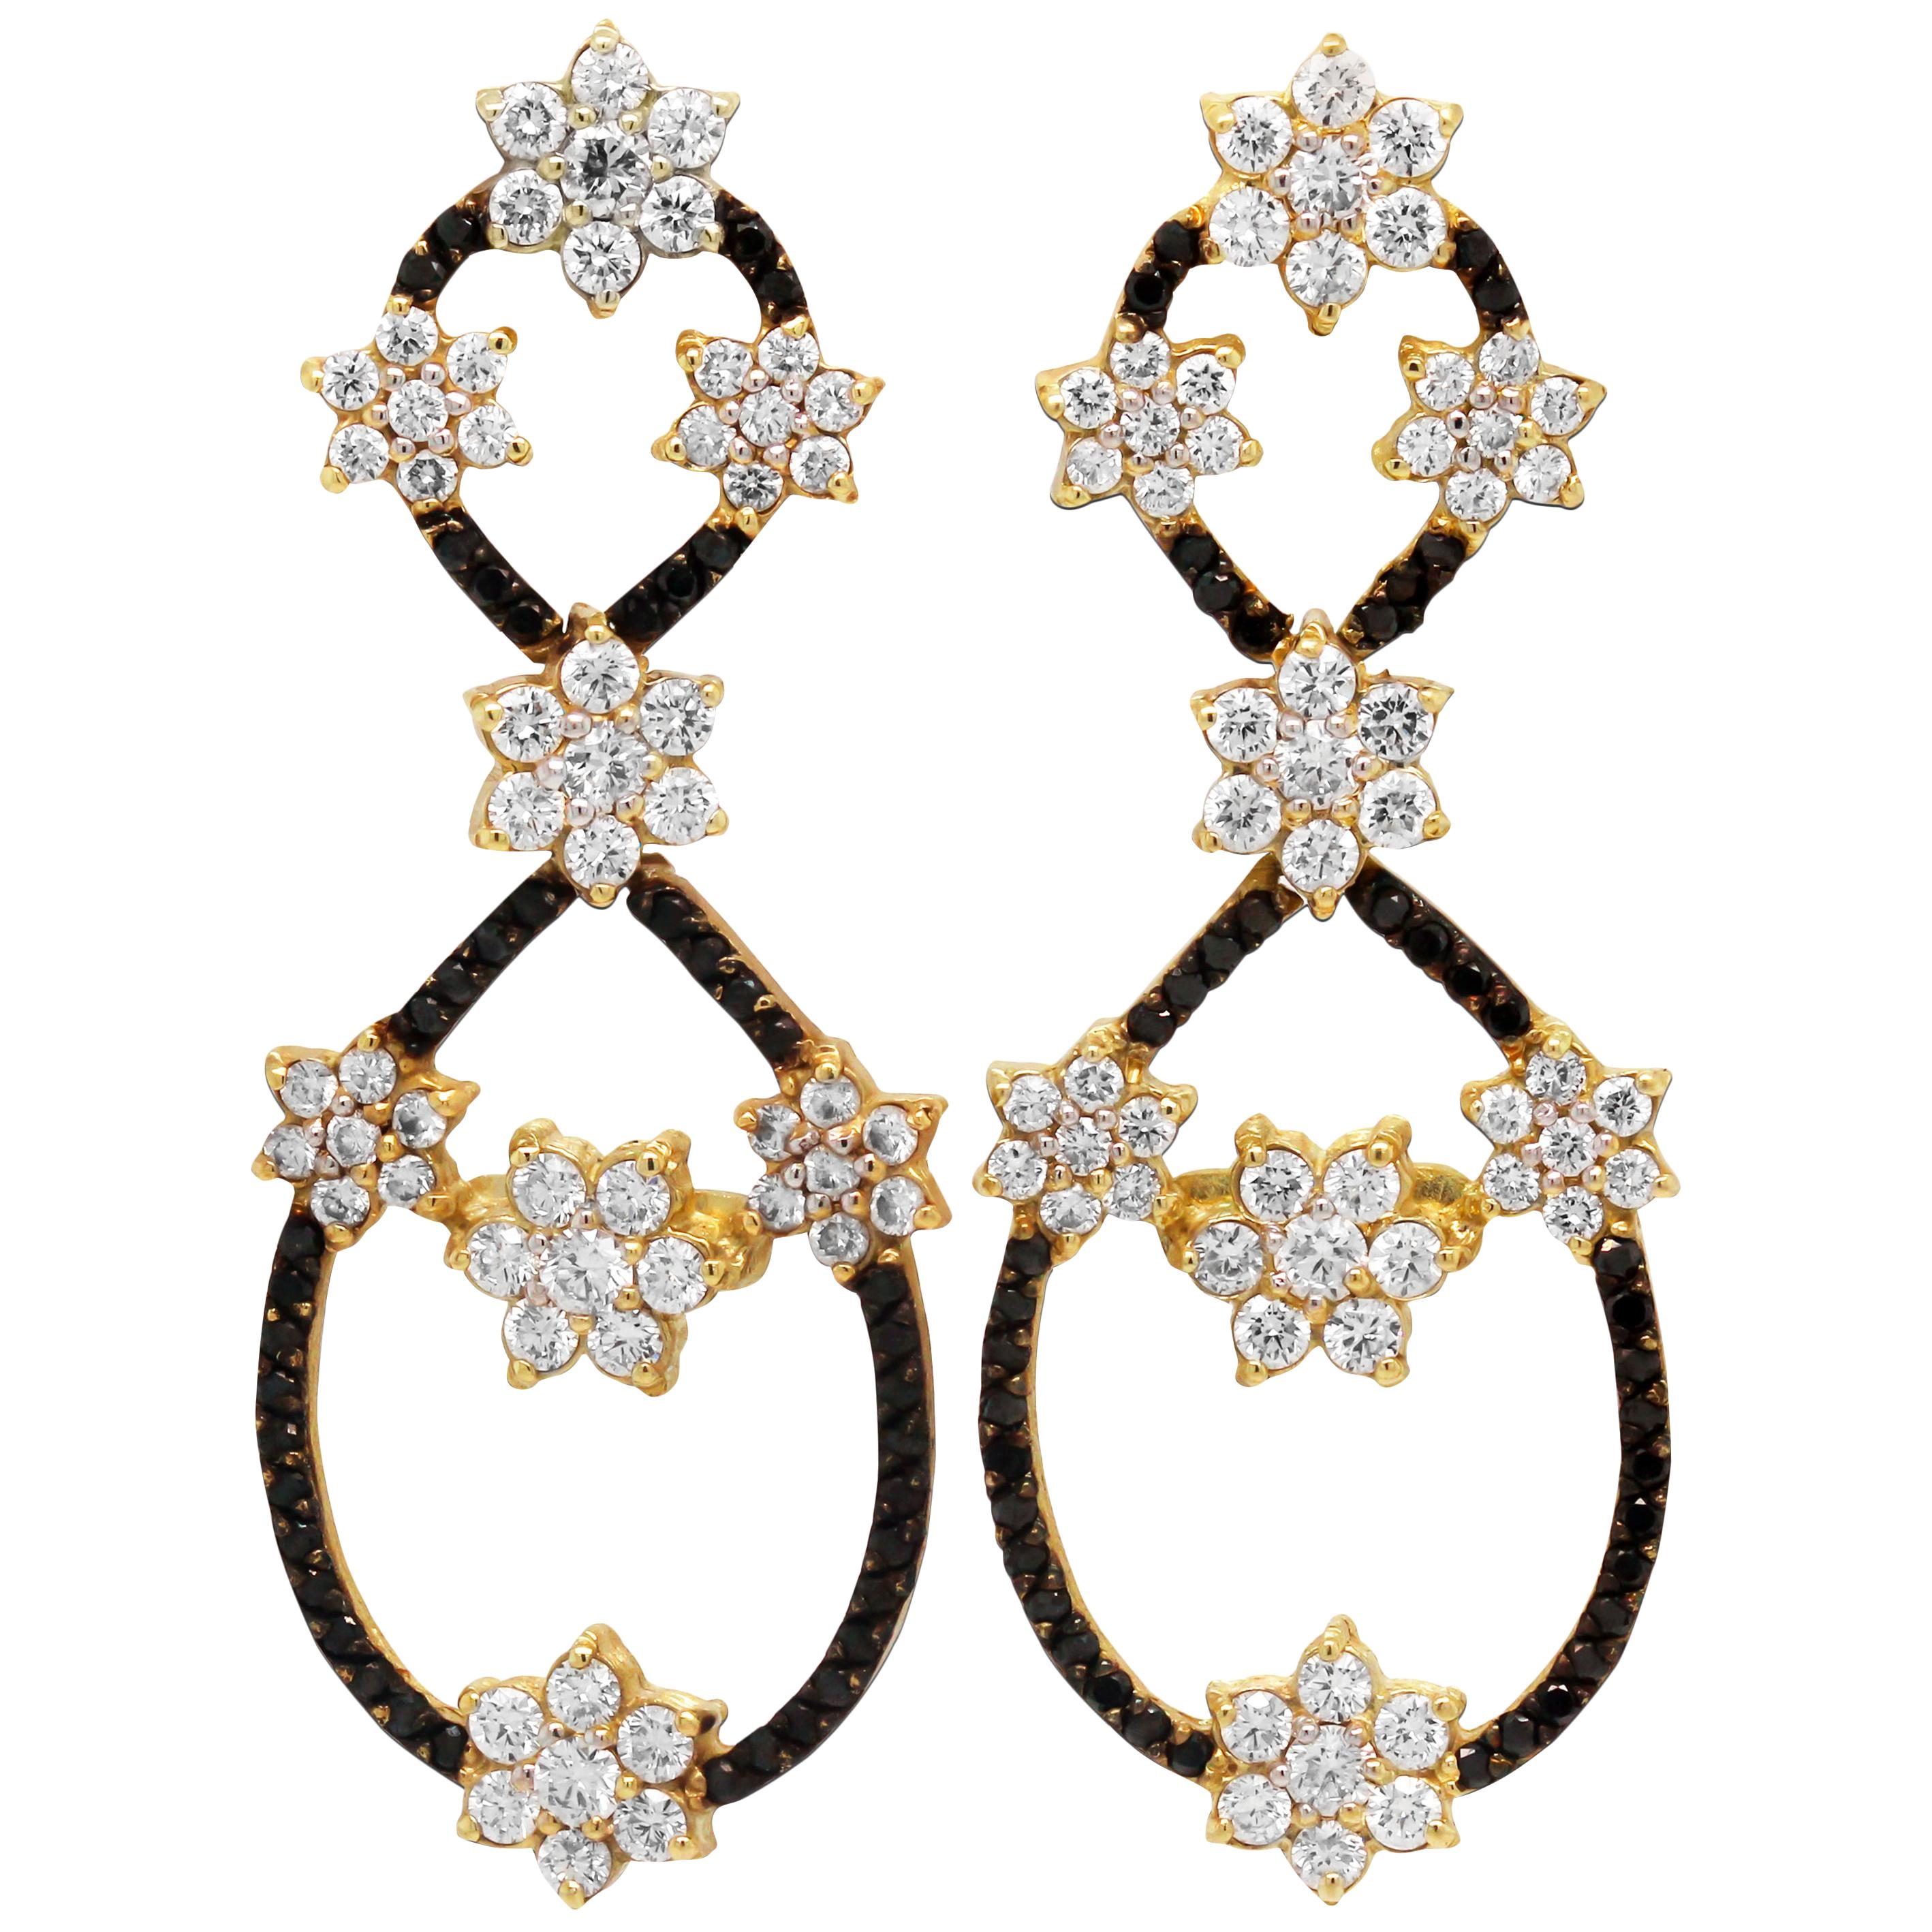 Stambolian Pendants d'oreilles en or 18 carats avec grappes de fleurs en diamants noirs et blancs